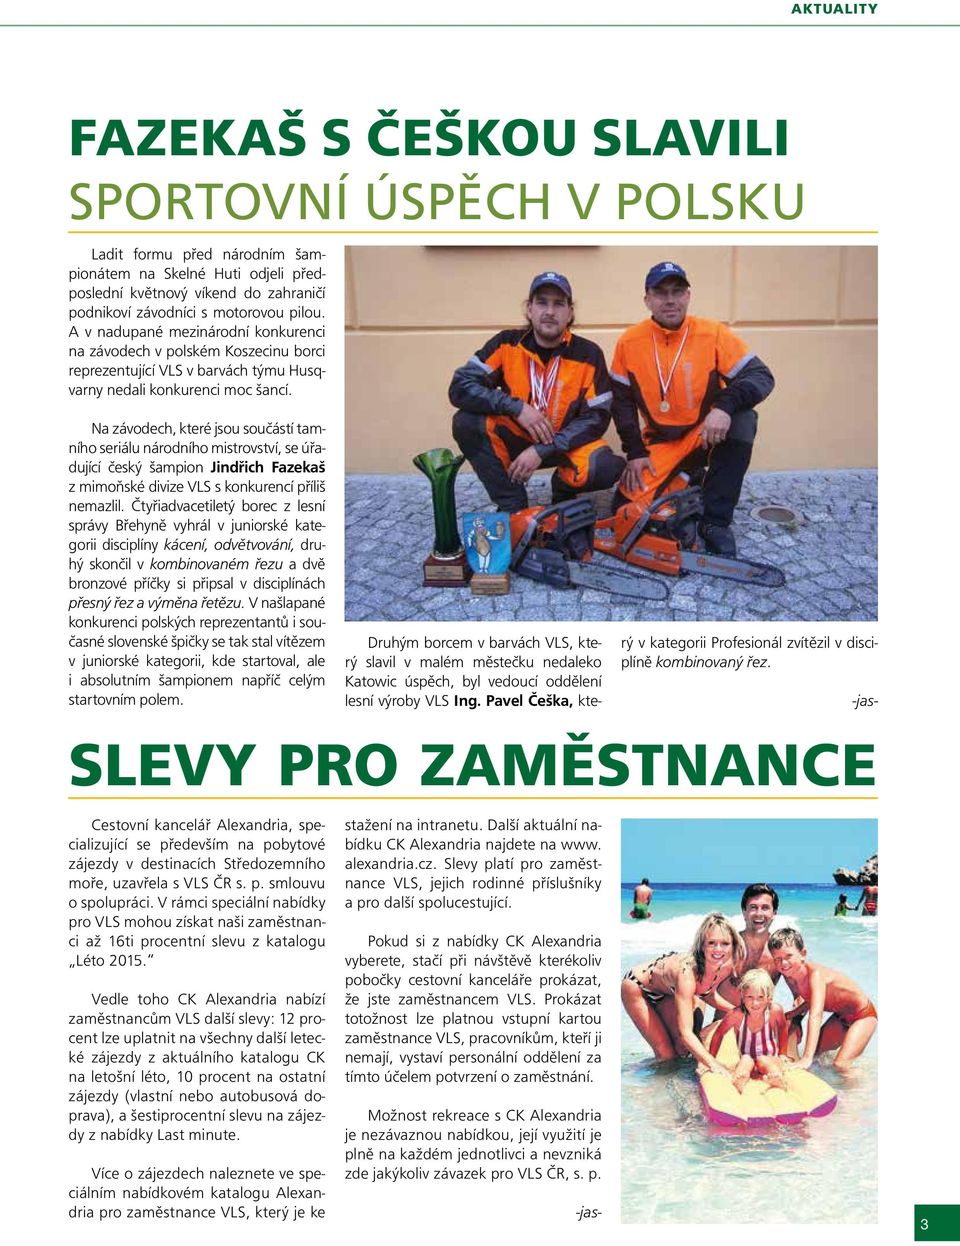 Na závodech, které jsou součástí tamního seriálu národního mistrovství, se úřadující český šampion Jindřich Fazekaš z mimoňské divize VLS s konkurencí příliš nemazlil.